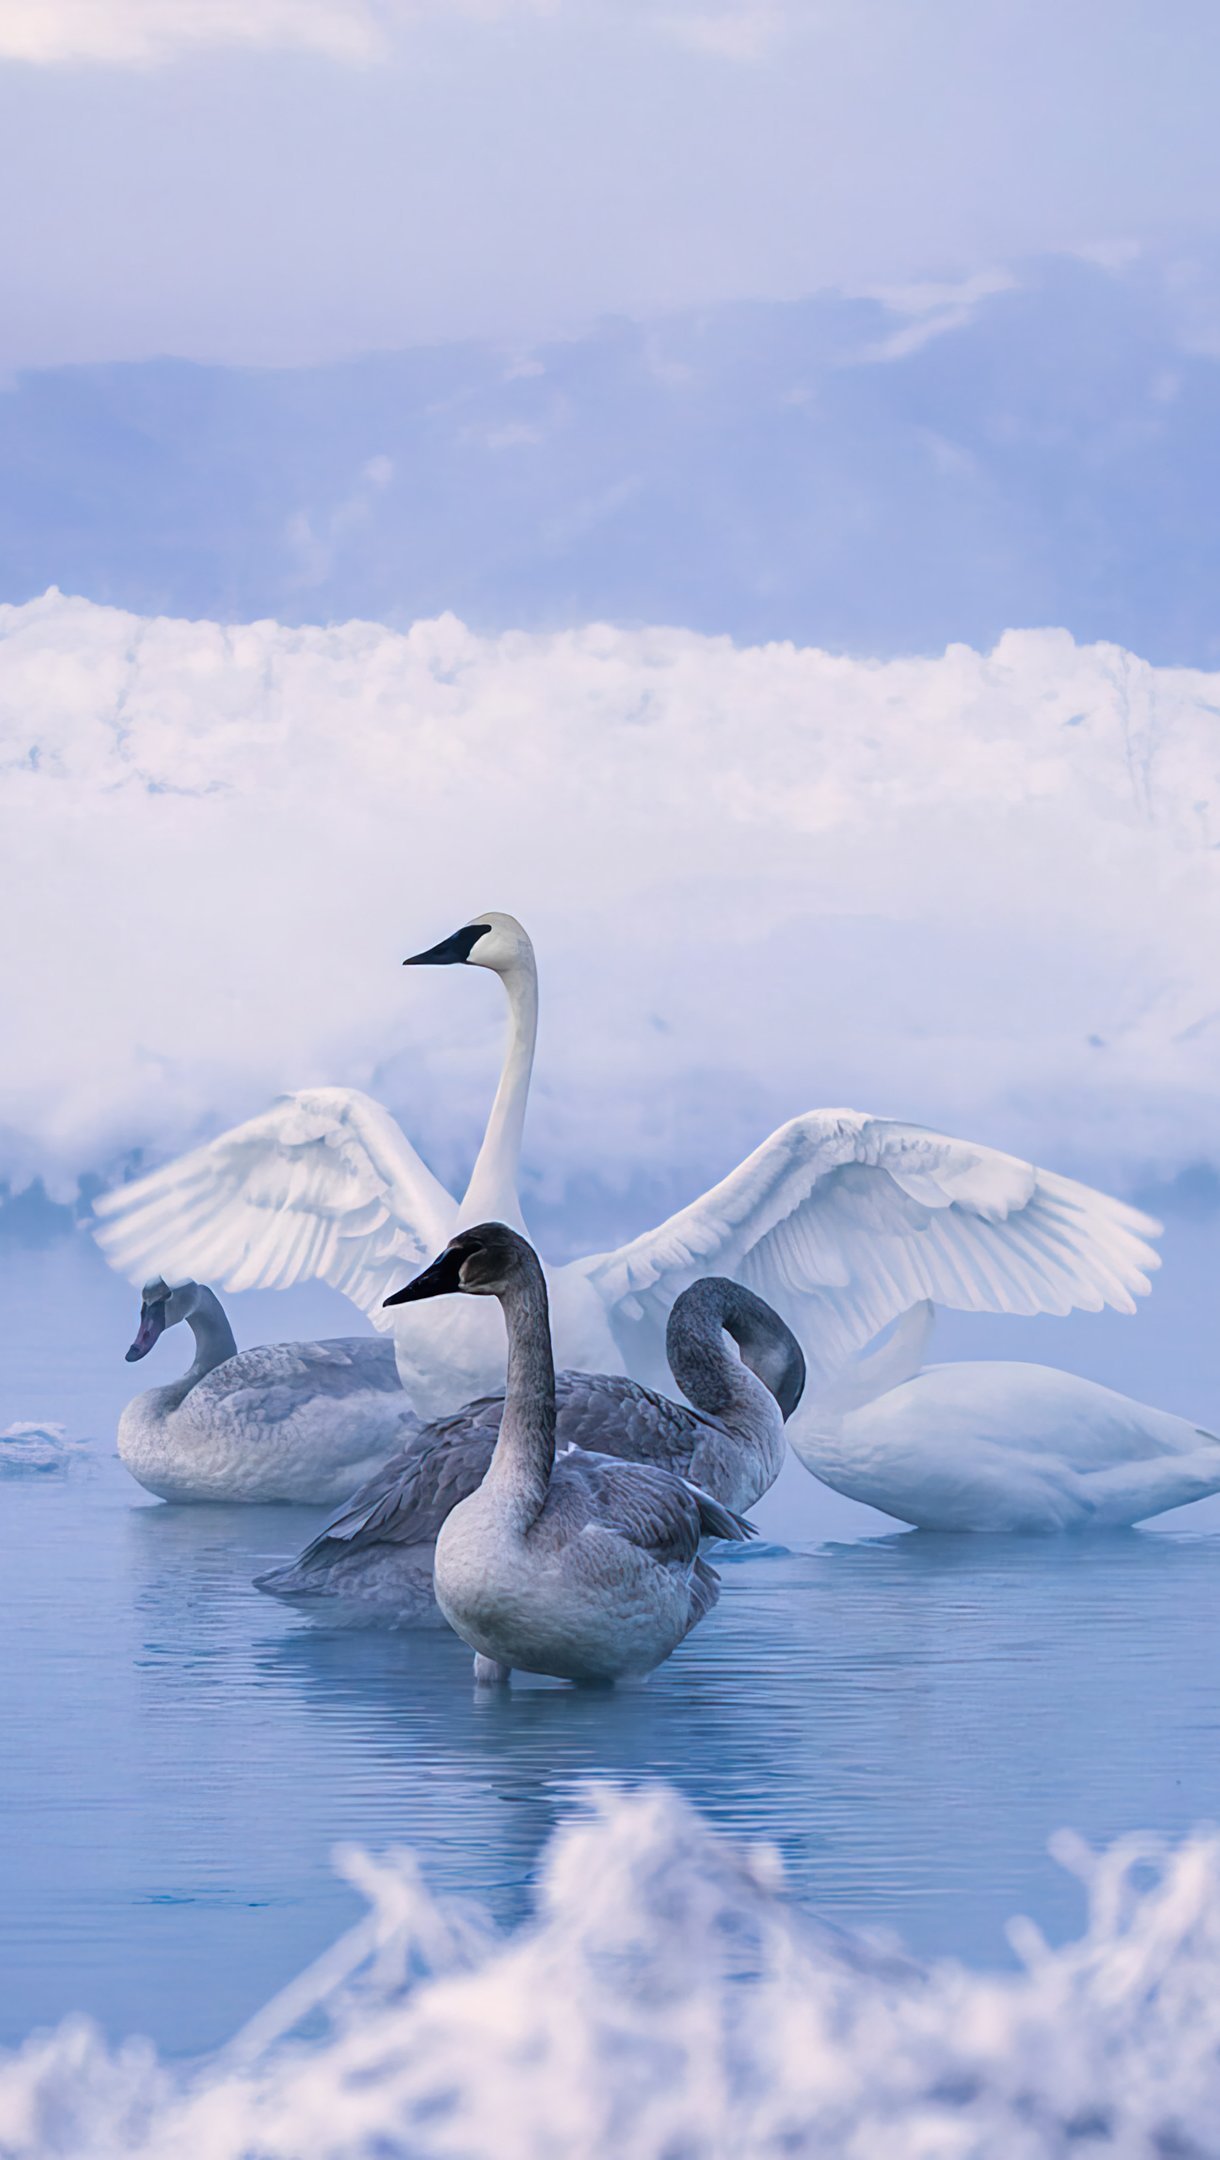 Cisnes en lago congelado Fondo de pantalla 4k Ultra HD ID:9794